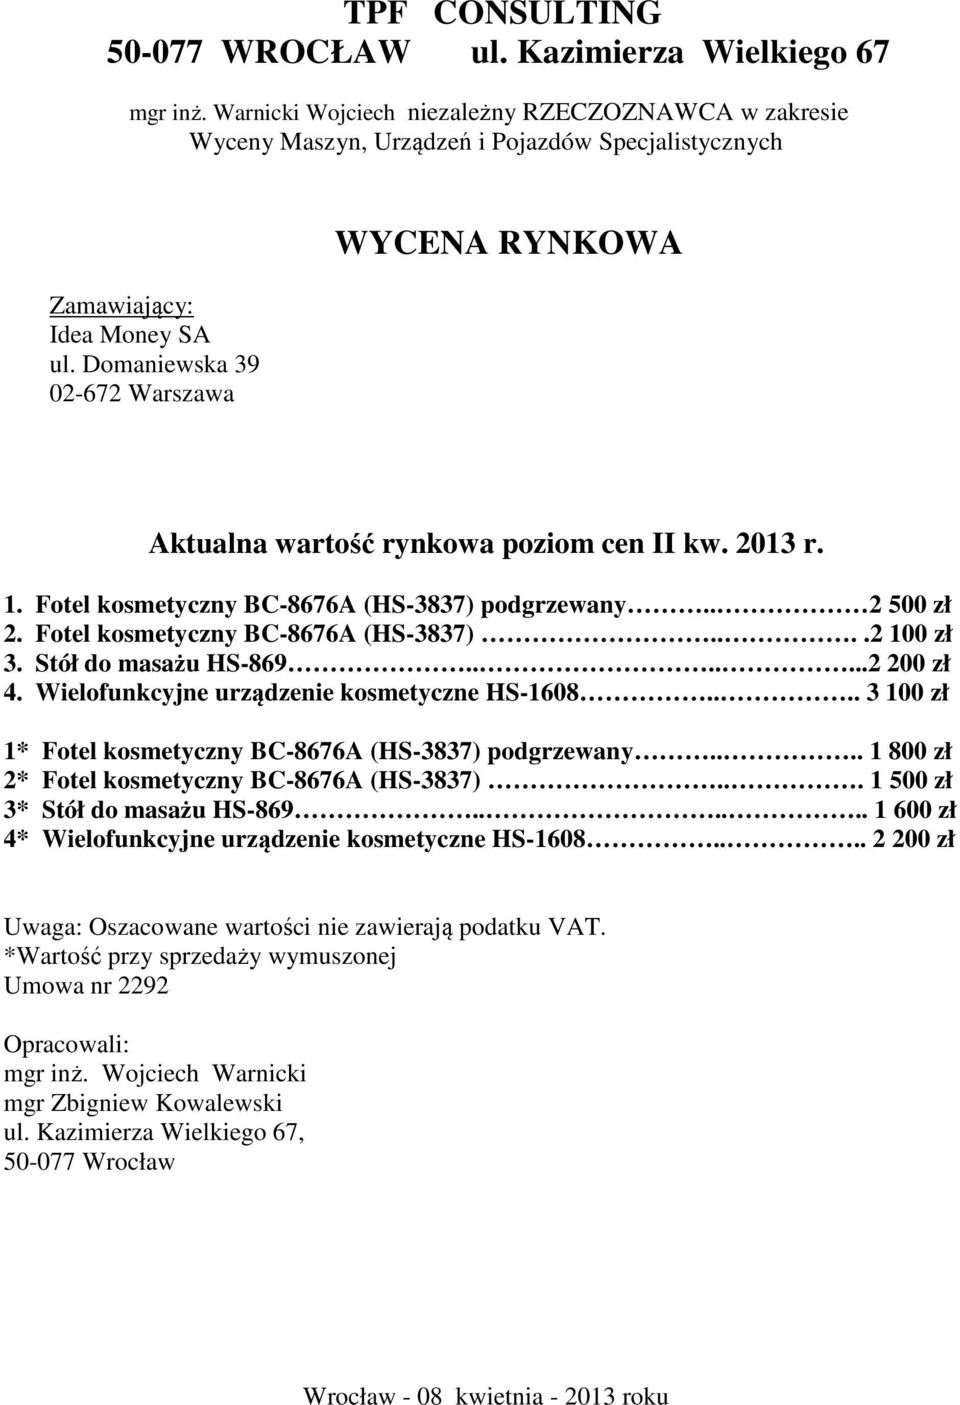 Domaniewska 39 02-672 Warszawa WYCENA RYNKOWA Aktualna wartość rynkowa poziom cen II kw. 2013 r. 1. Fotel kosmetyczny BC-8676A (HS-3837) podgrzewany.. 2 500 zł 2. Fotel kosmetyczny BC-8676A (HS-3837)....2 100 zł 3.